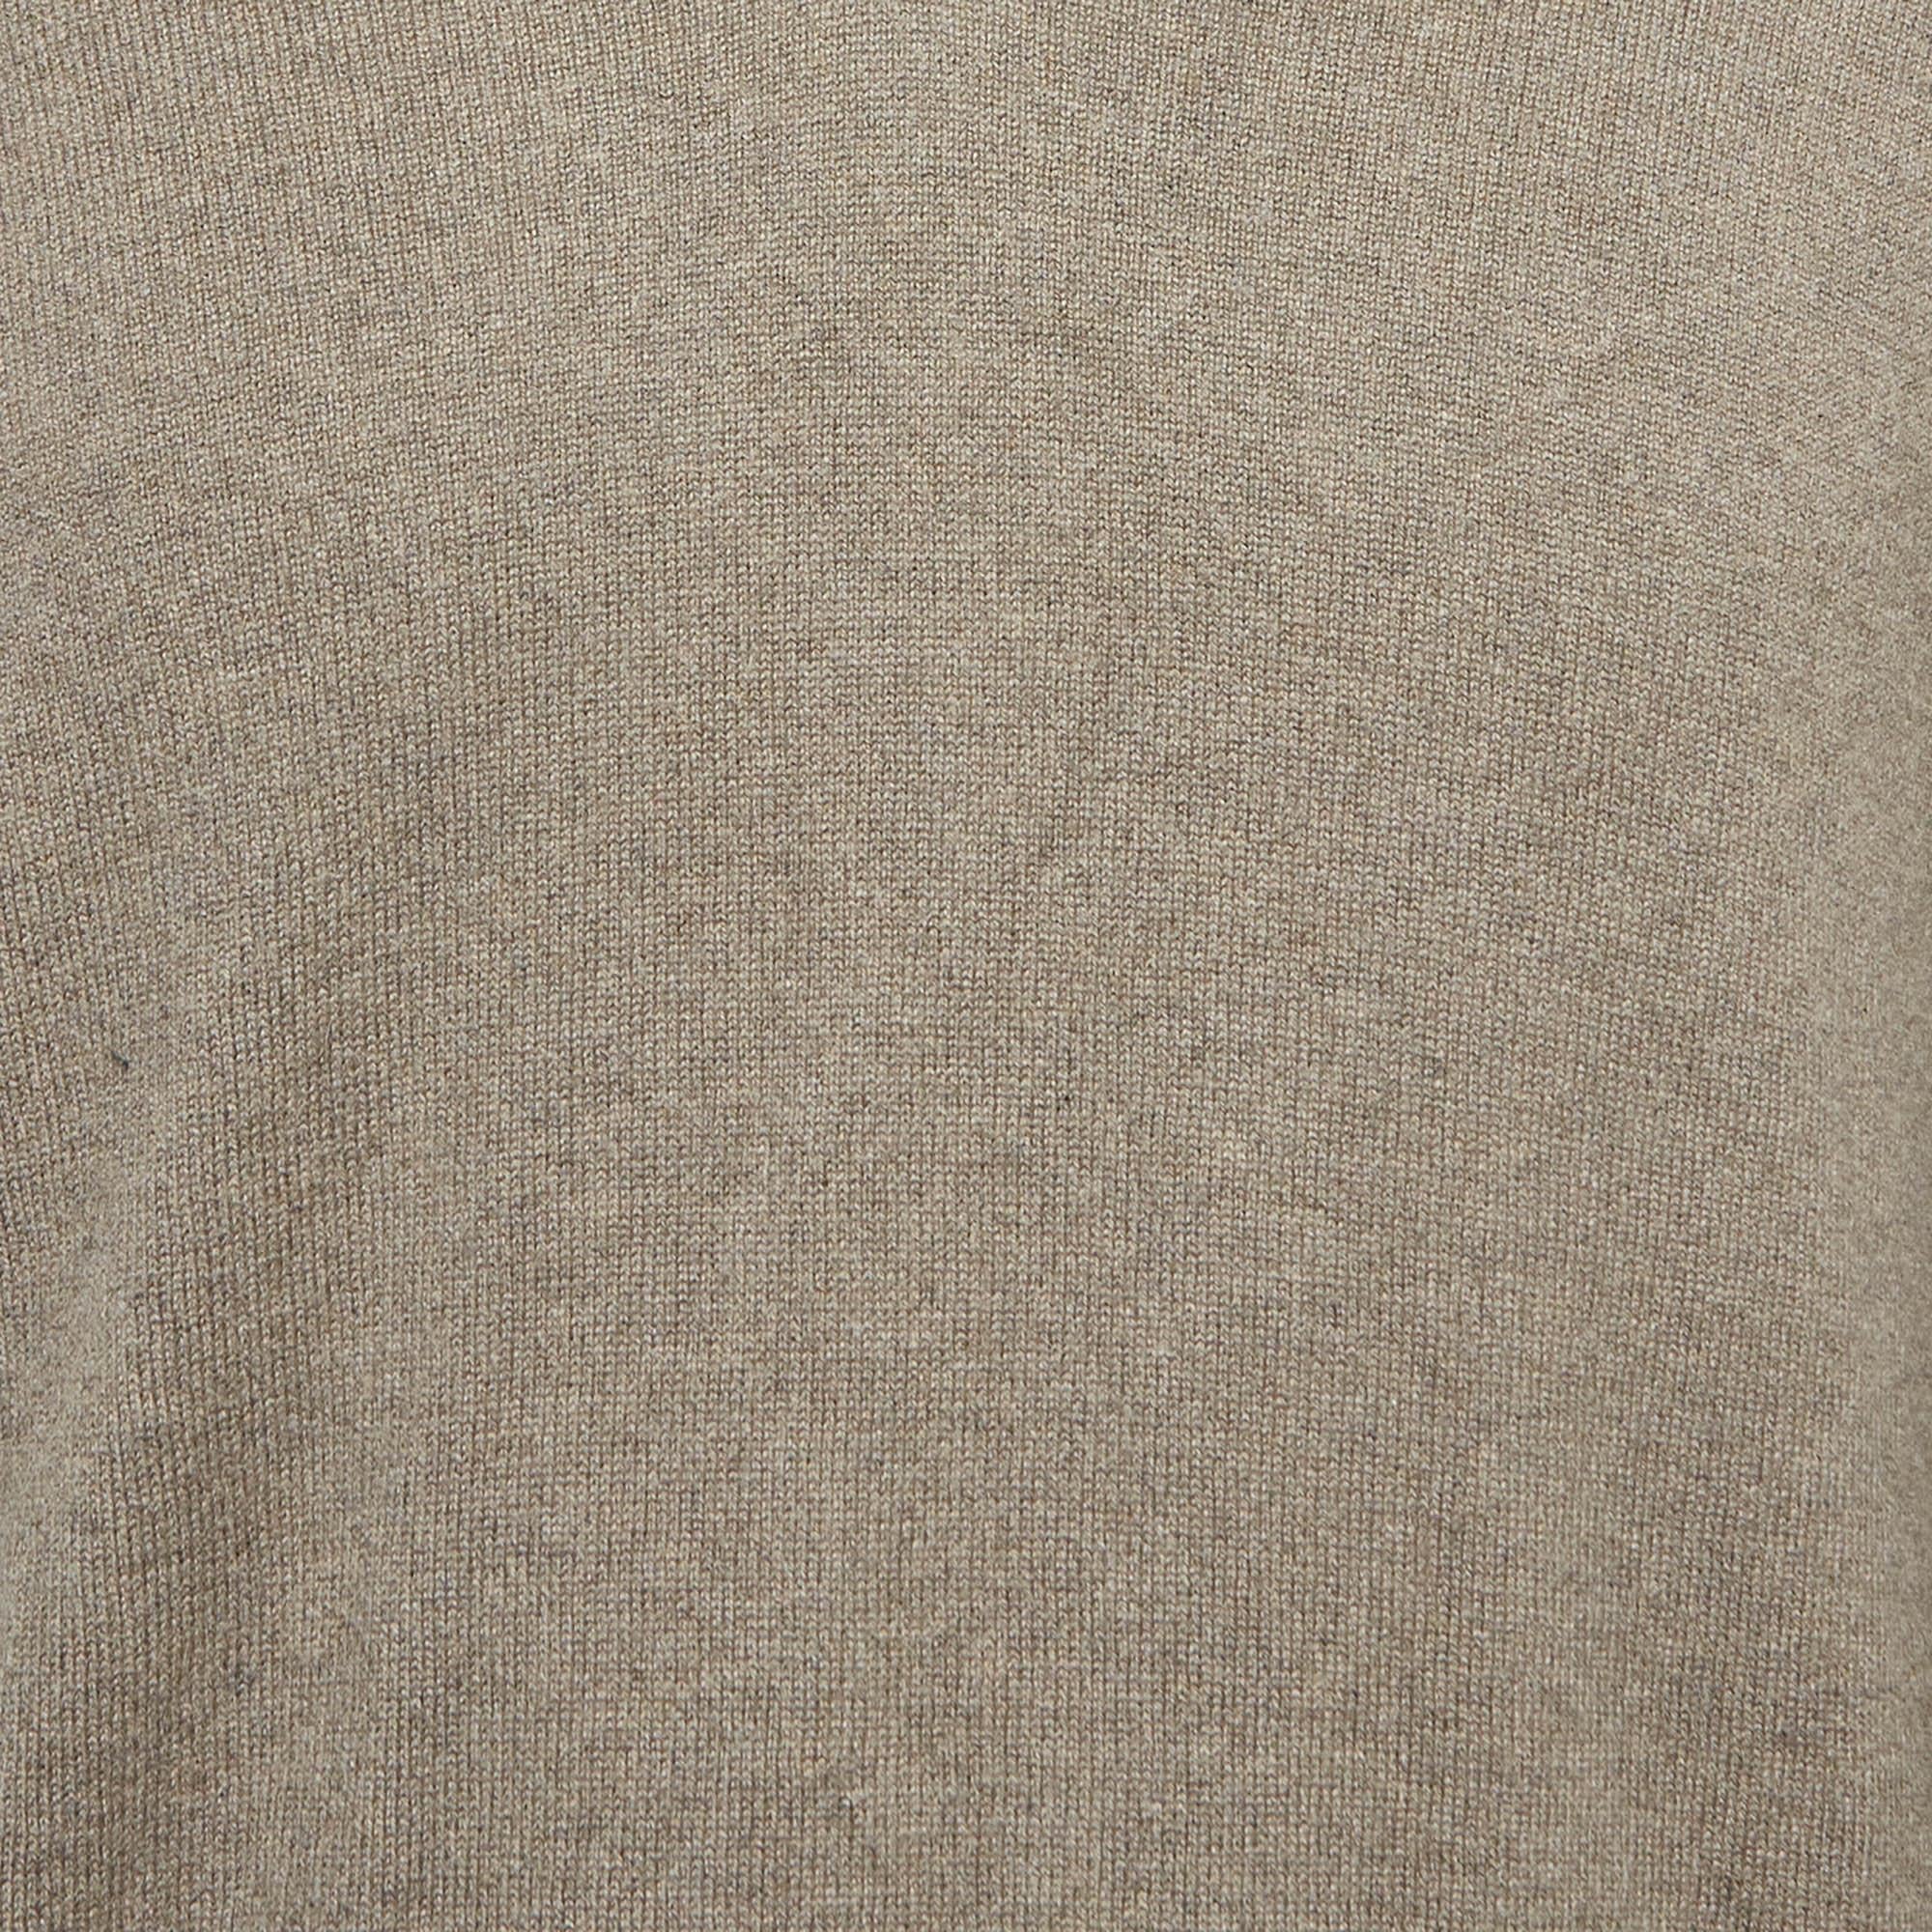 Loro Piana Brown Baby Cashmere V-Neck Sweater M In Good Condition For Sale In Dubai, Al Qouz 2